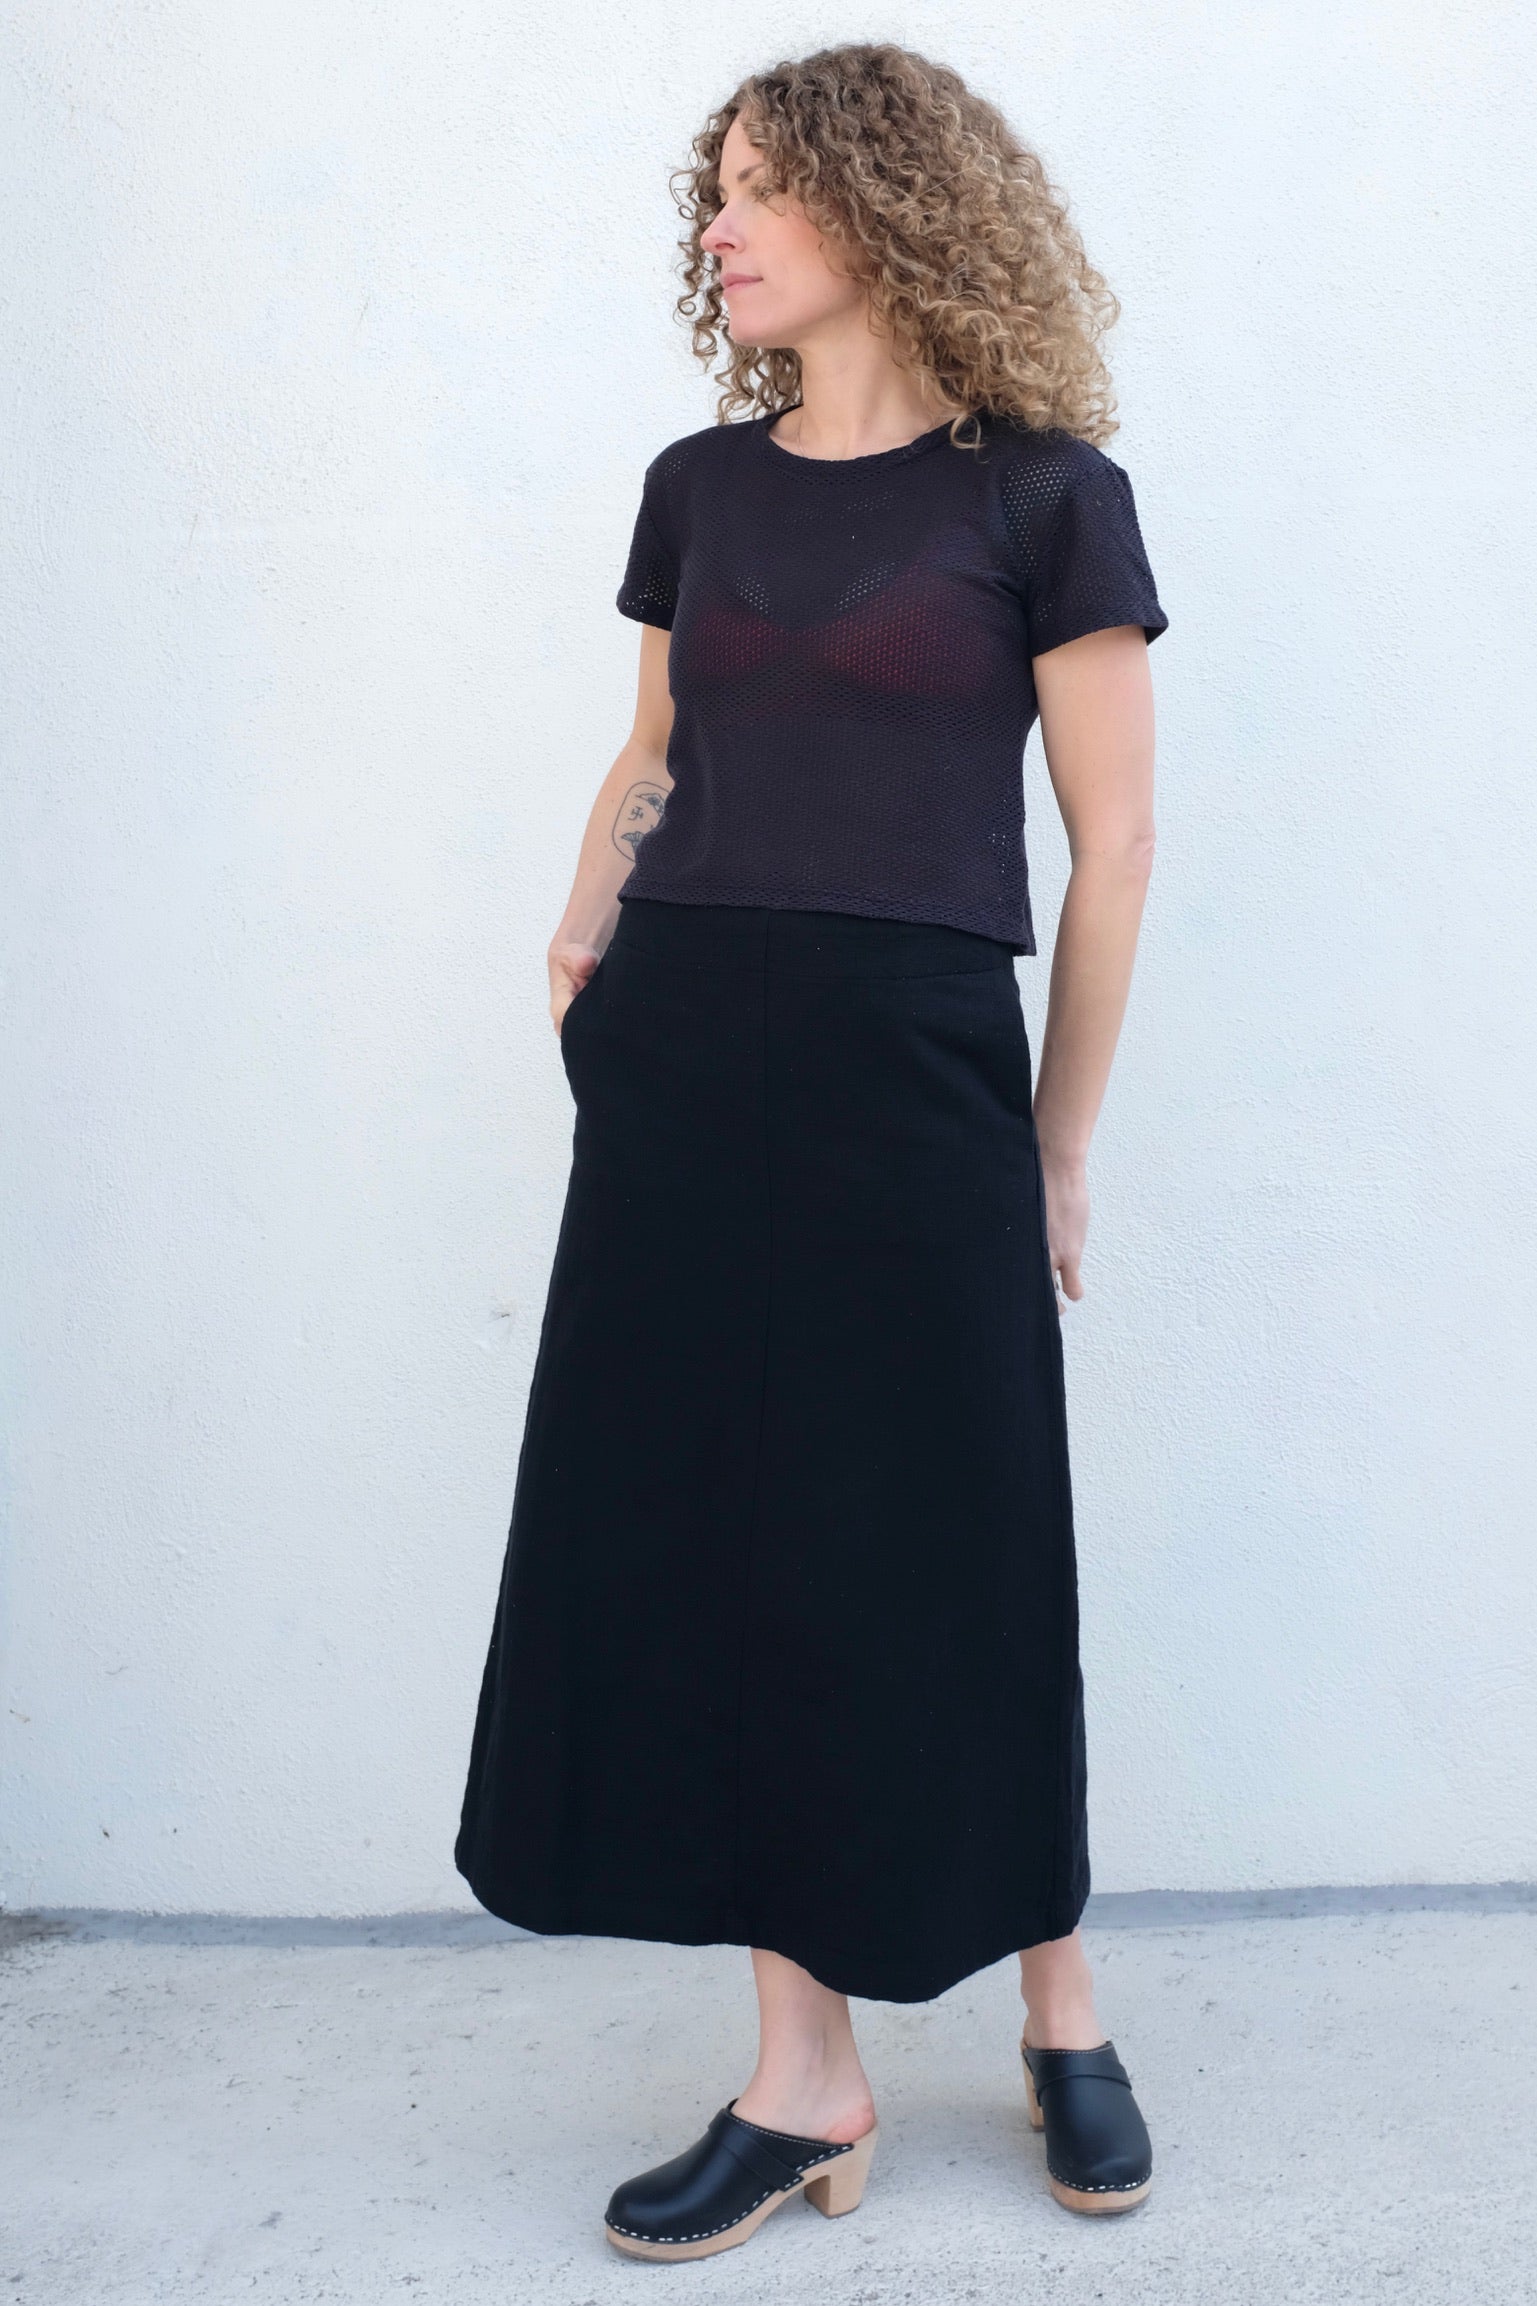 Atelier Delphine Meunier Skirt / Black